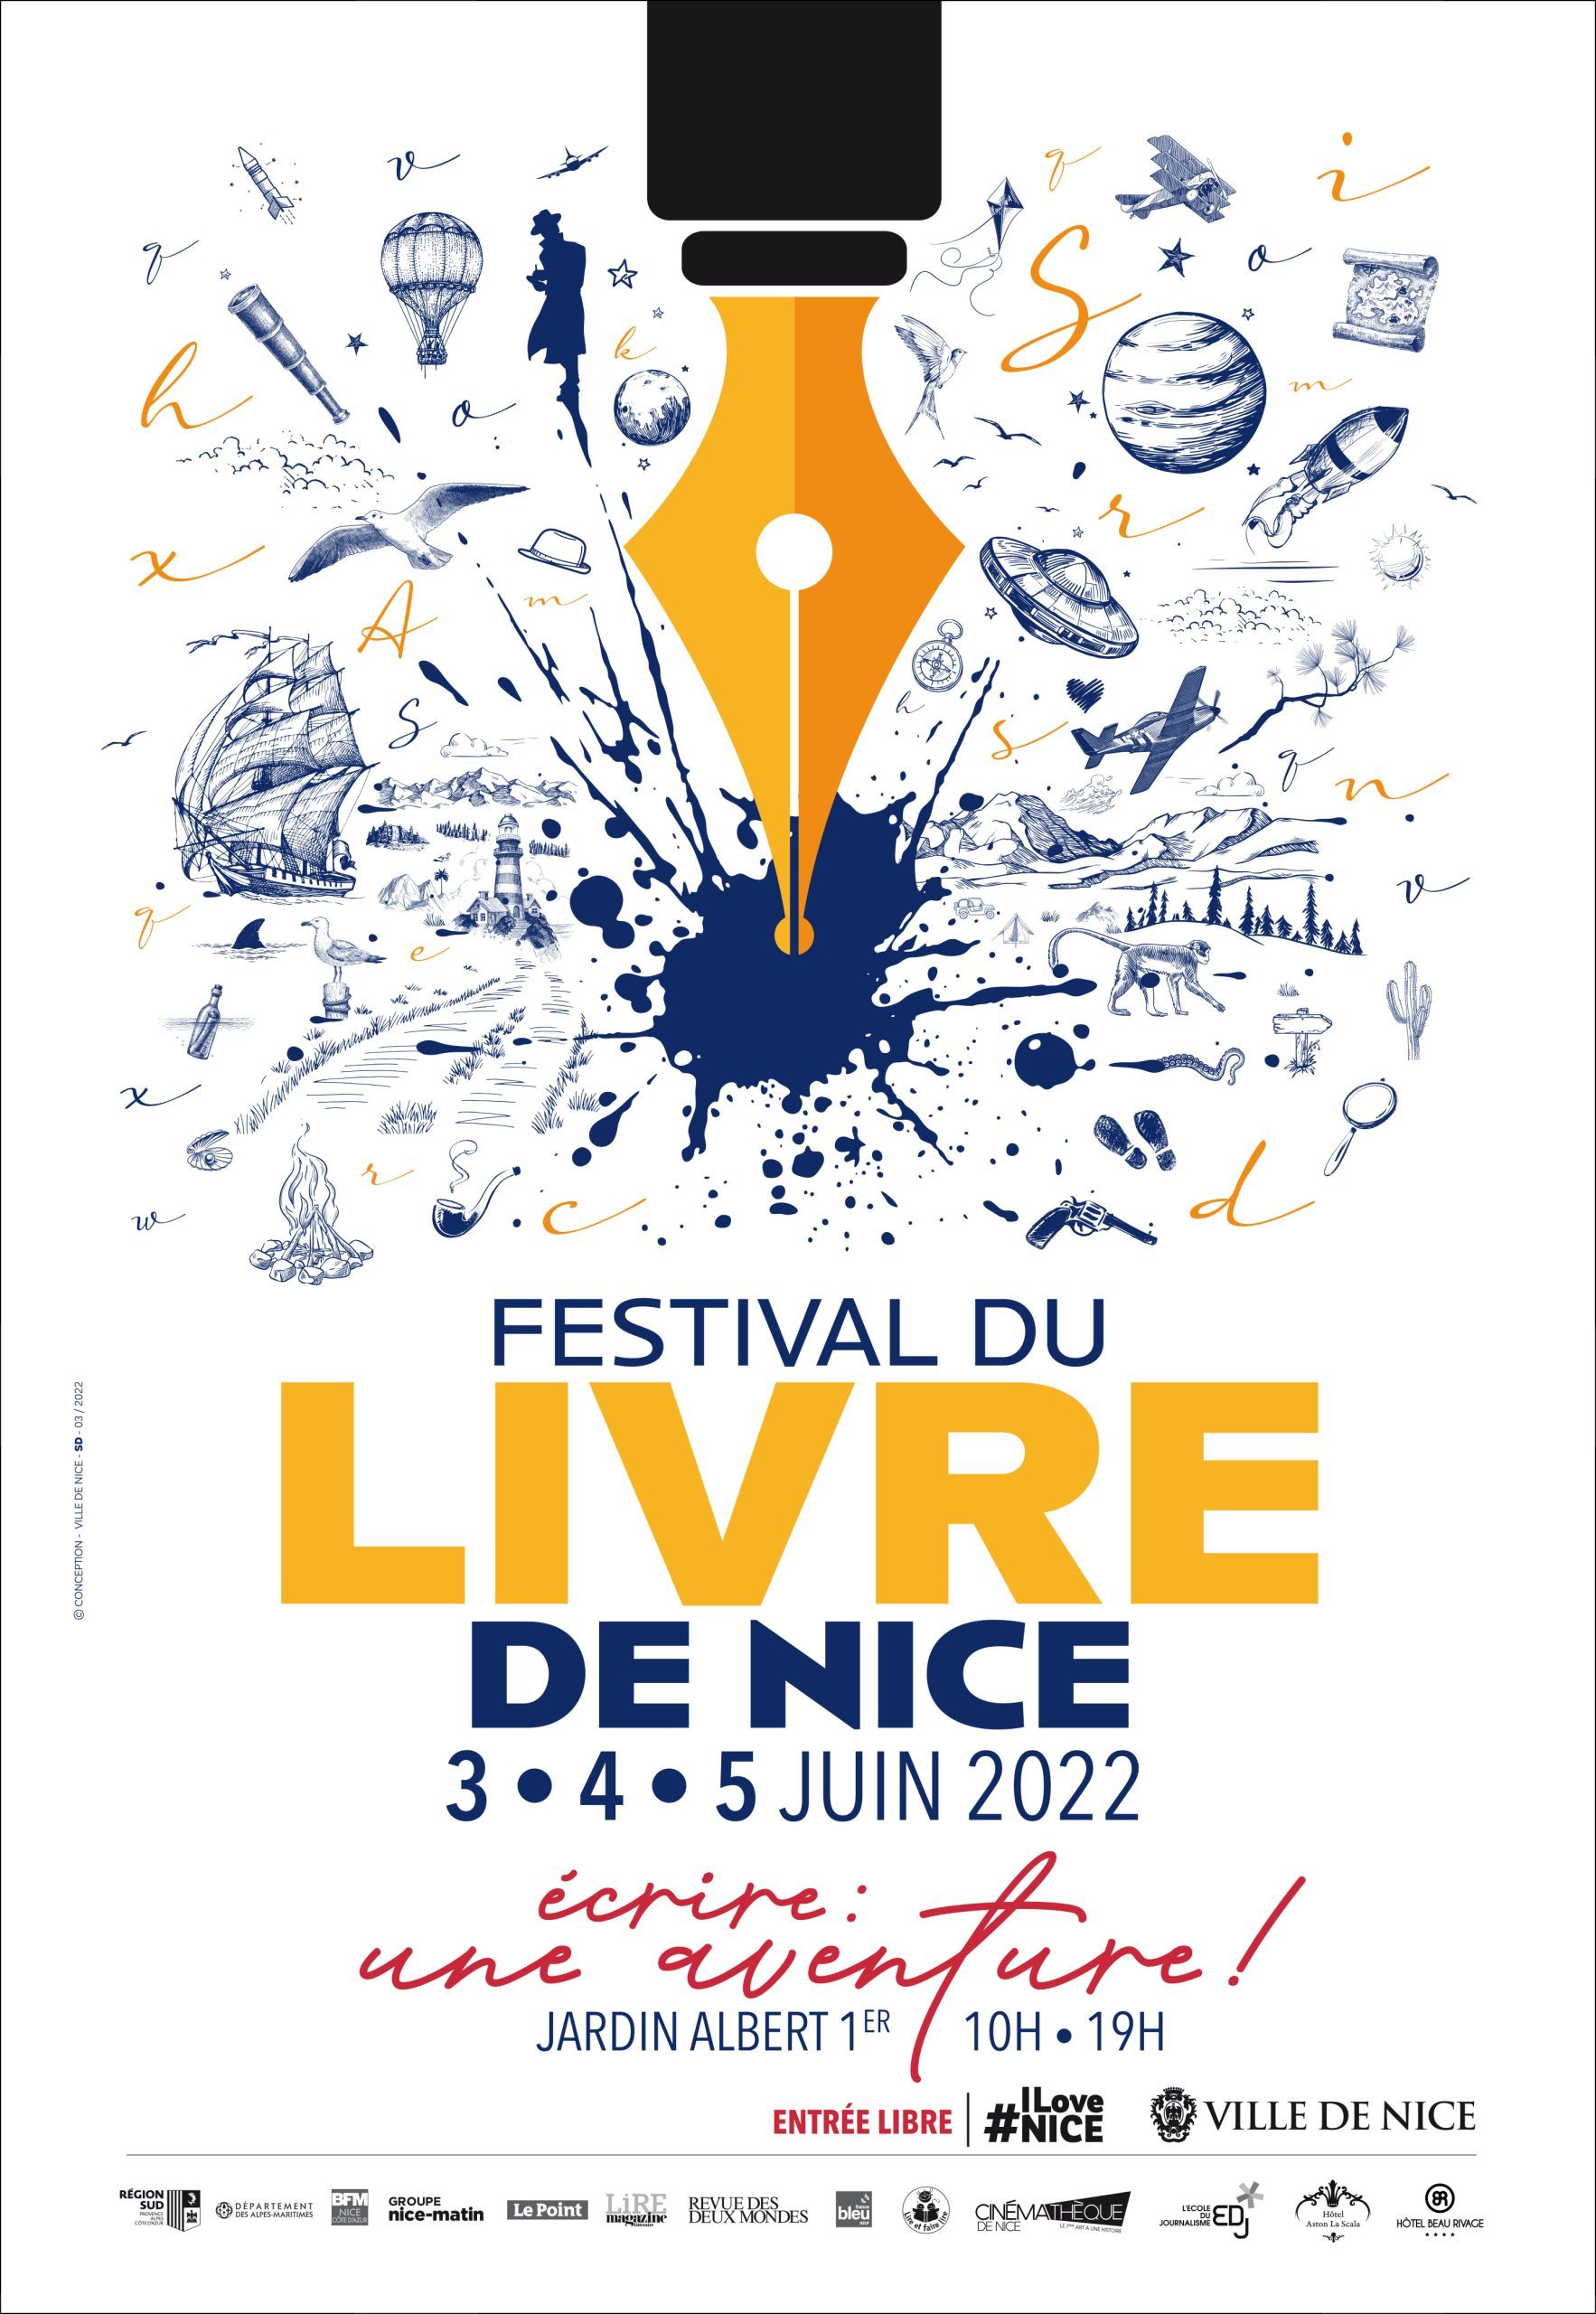 Festival du livre de Nice : Vincent Dugomier, Renata Castellani, Franck Biancarelli